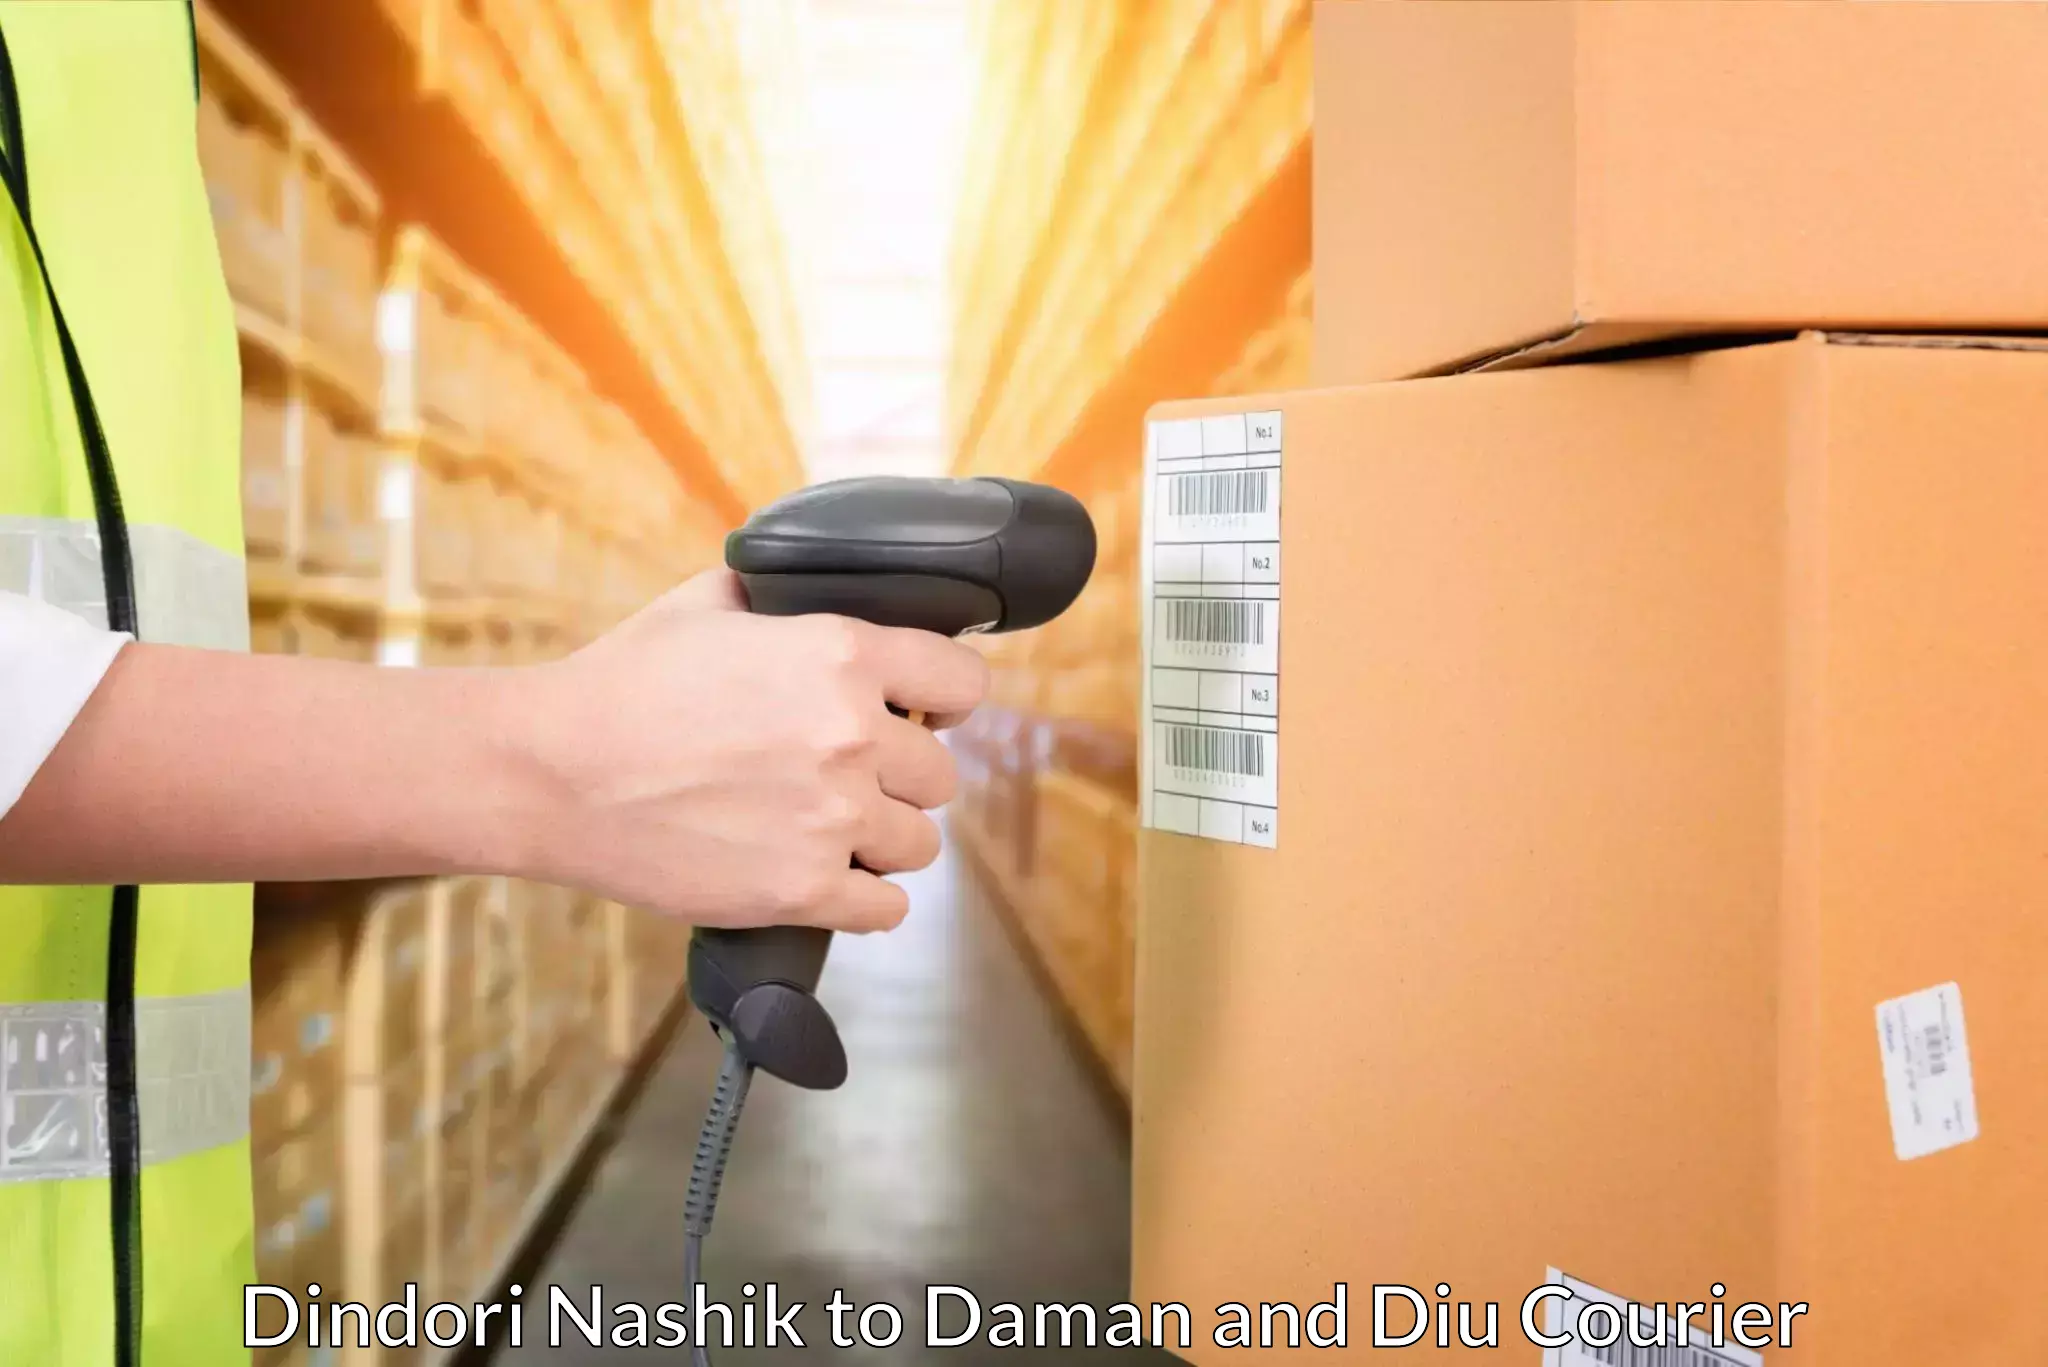 Global freight services Dindori Nashik to Daman